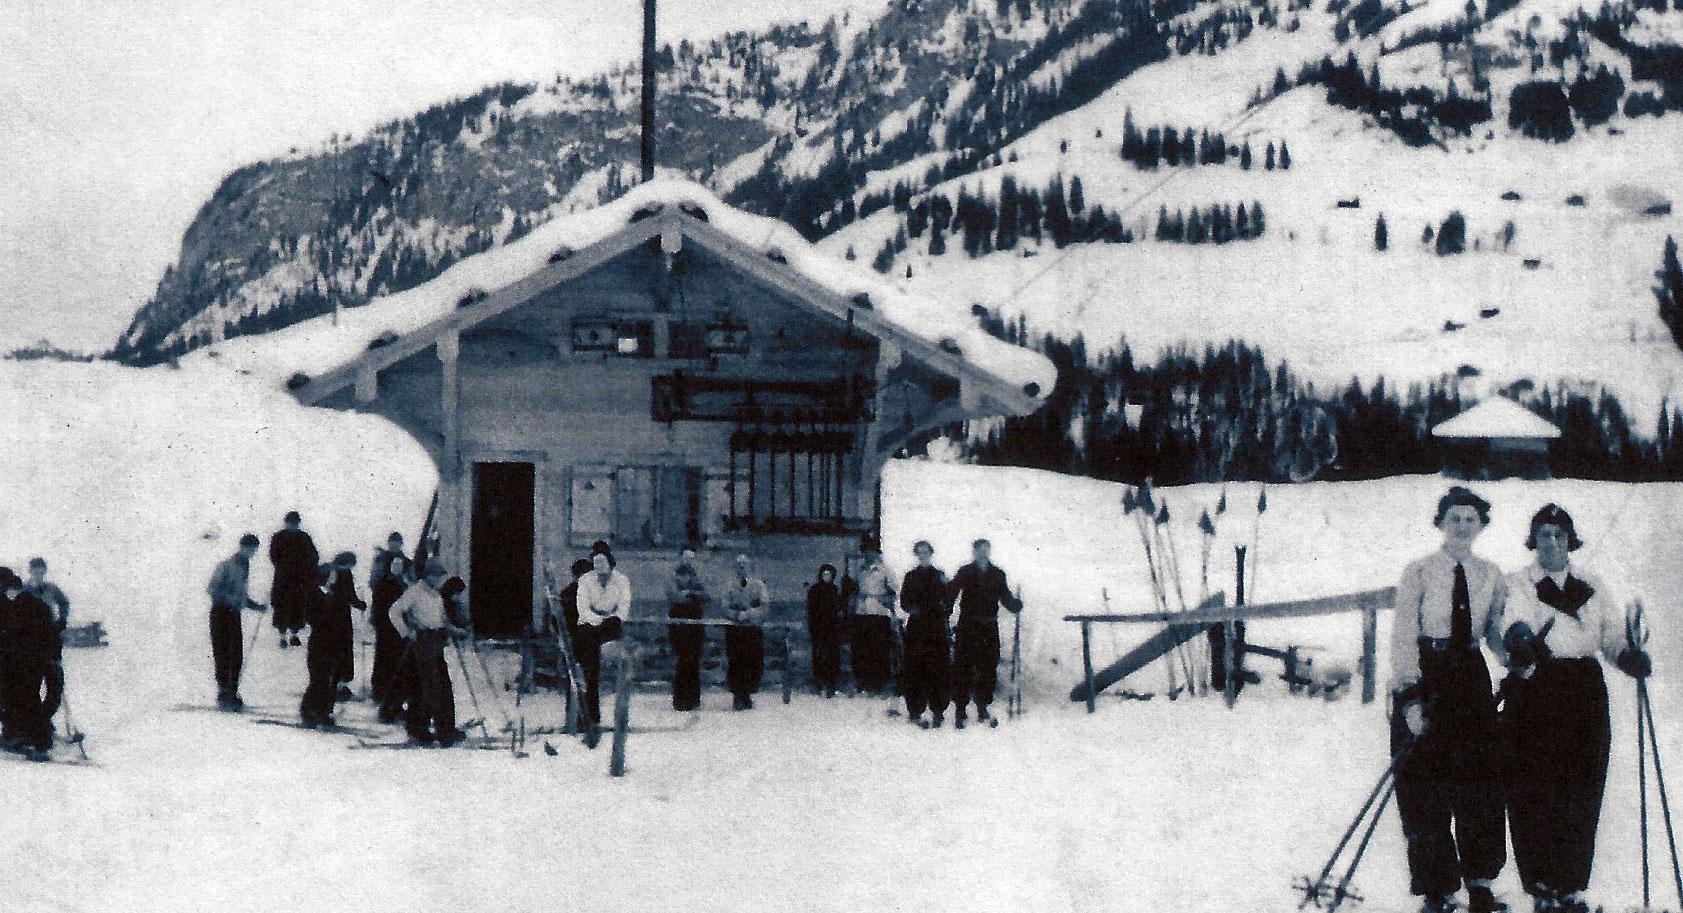 Erster Skilift in Engelberg auf der Gerschnialp, später Skilift Klostermatte 1938-1940